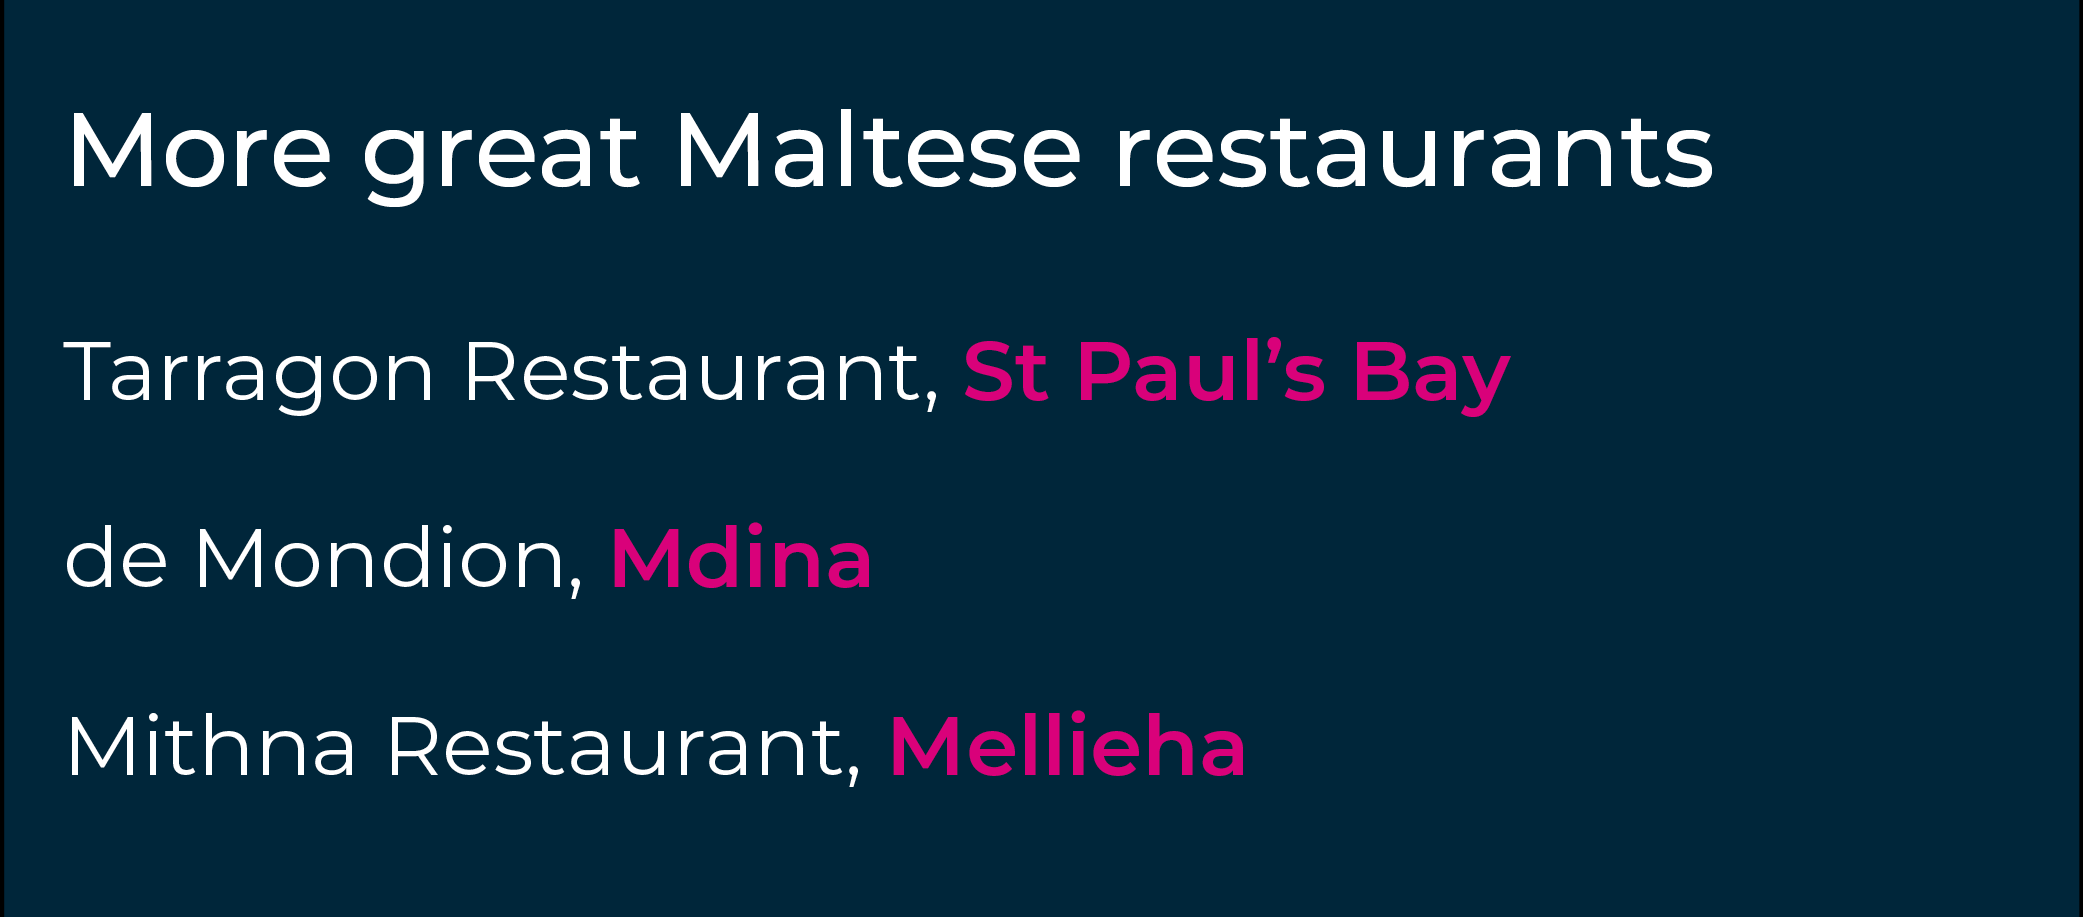 ¿Le ha cogido el gusto a los restaurantes imprescindibles de Malta?